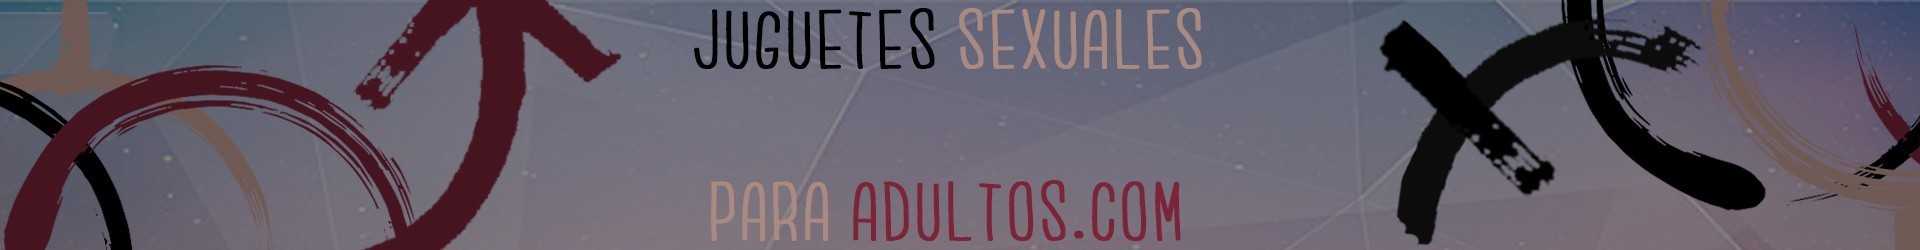 Lubricacion anal - Juguetes Sexuales para Adultos